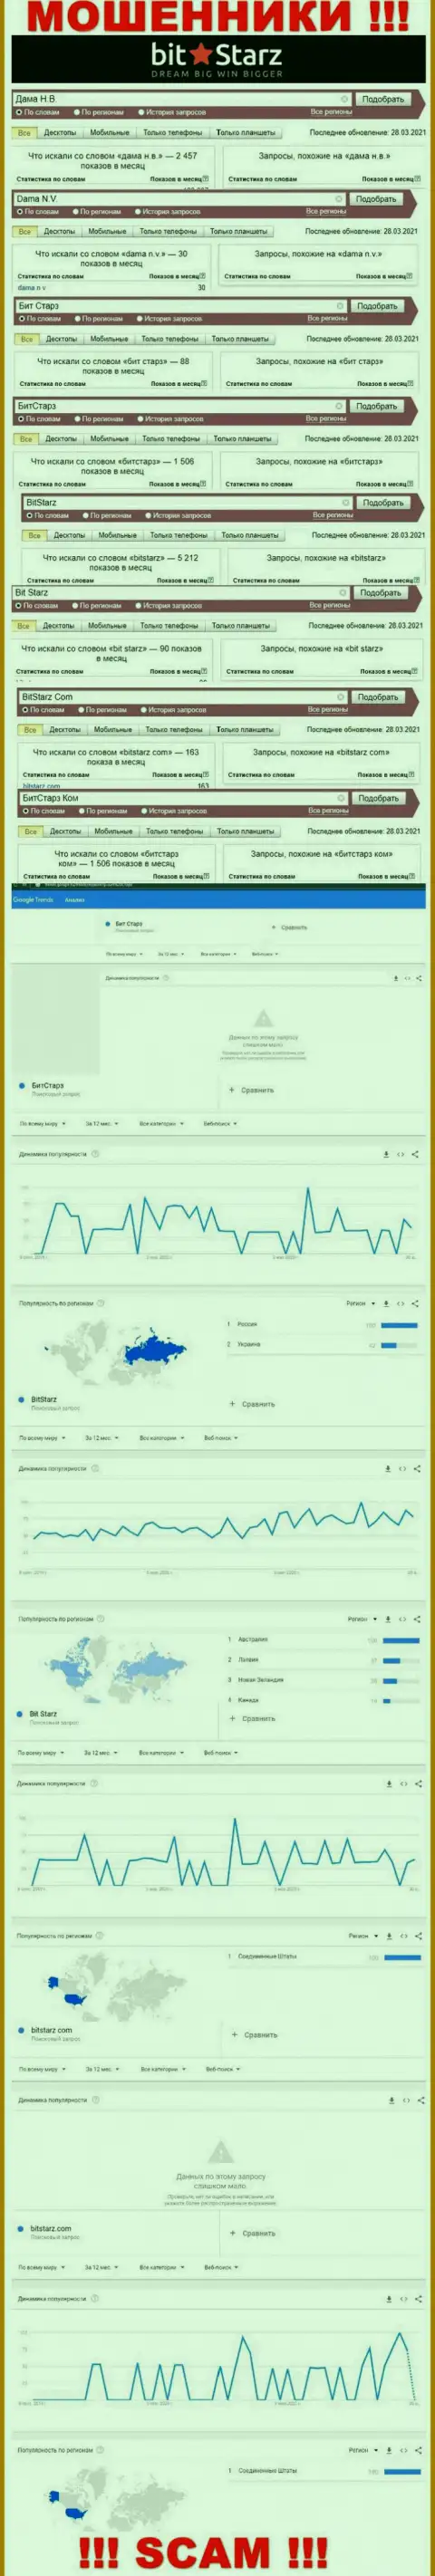 Статистические данные о запросах в поисковиках всемирной интернет сети сведений о компании BitStarz